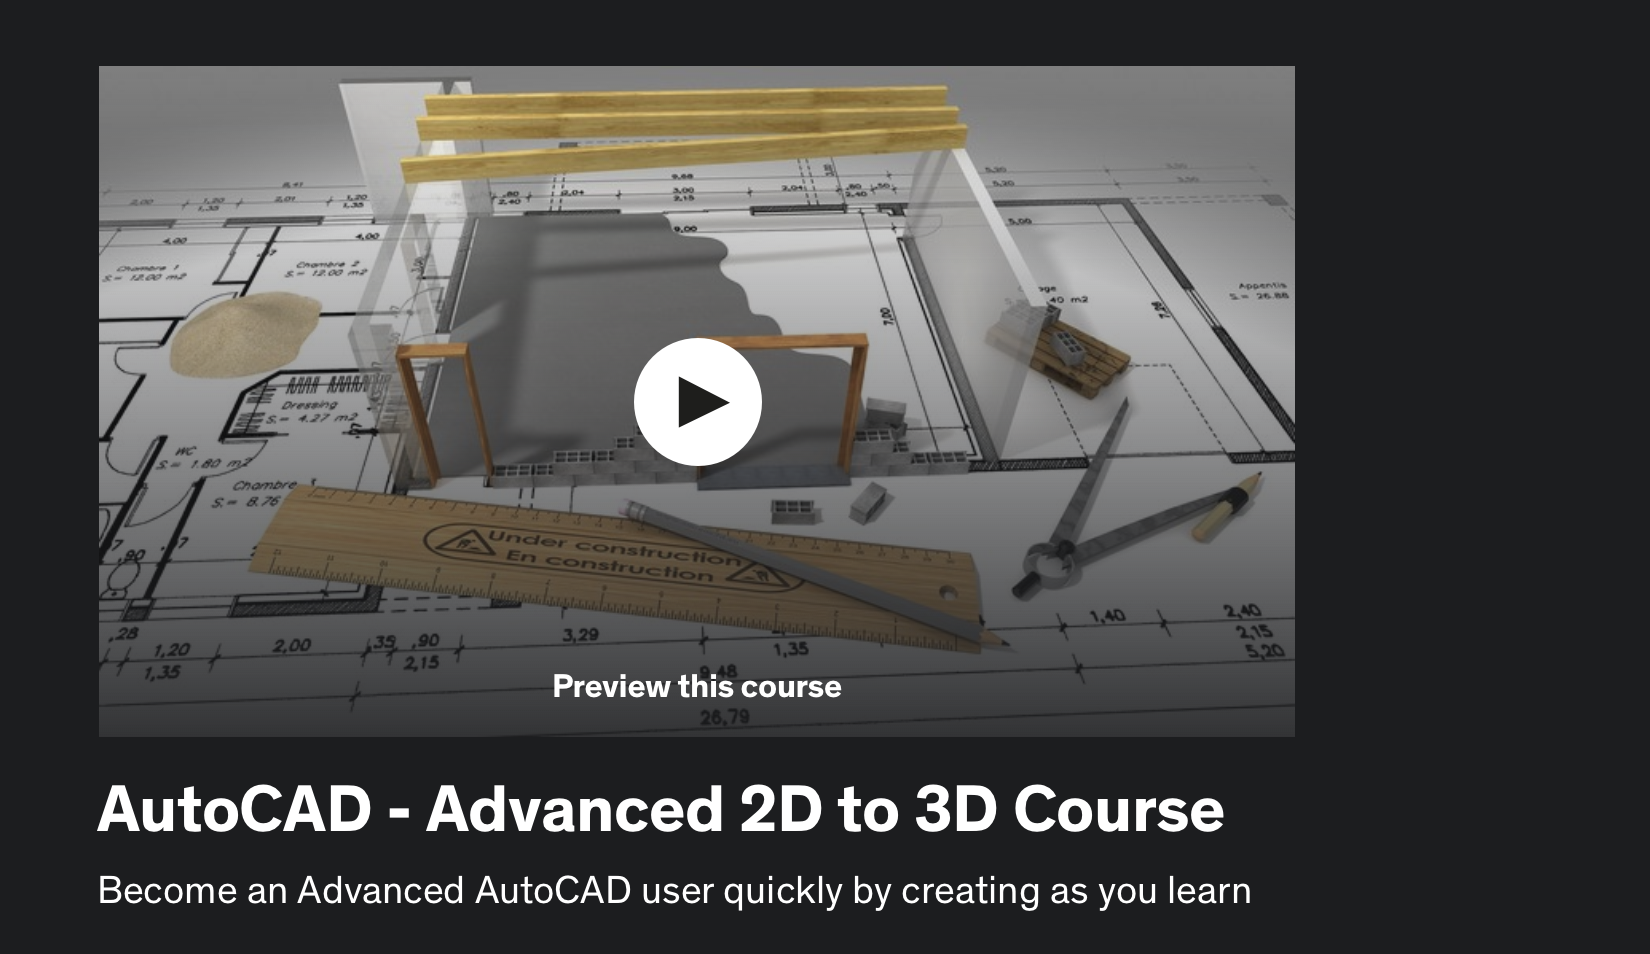 AutoCAD Advanced 2D to 3D Course